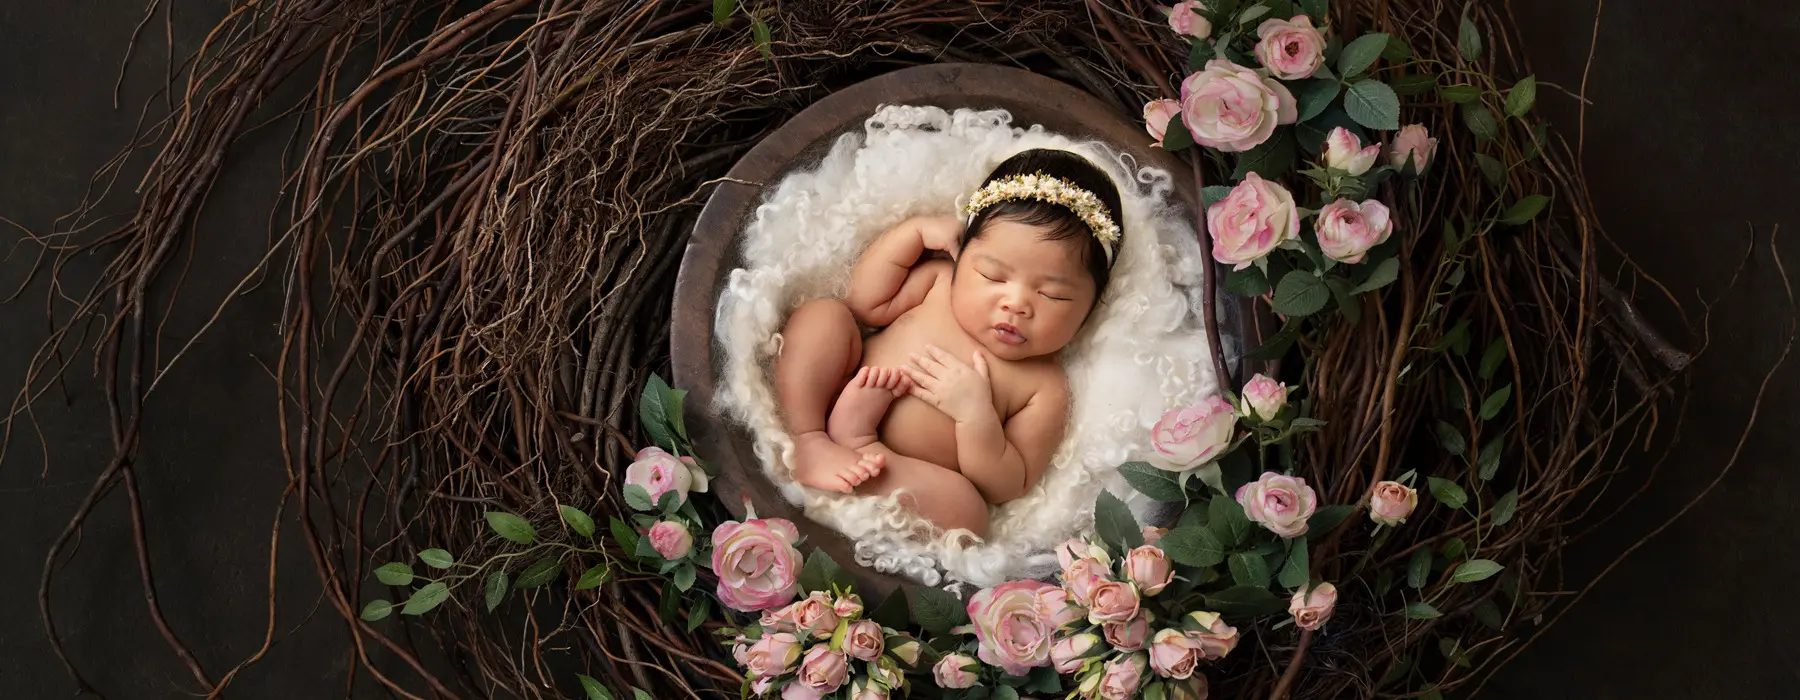 كيفية التبديل بسهولة إلى معدات سوني في التصوير الفوتوغرافي لحديثي الولادة